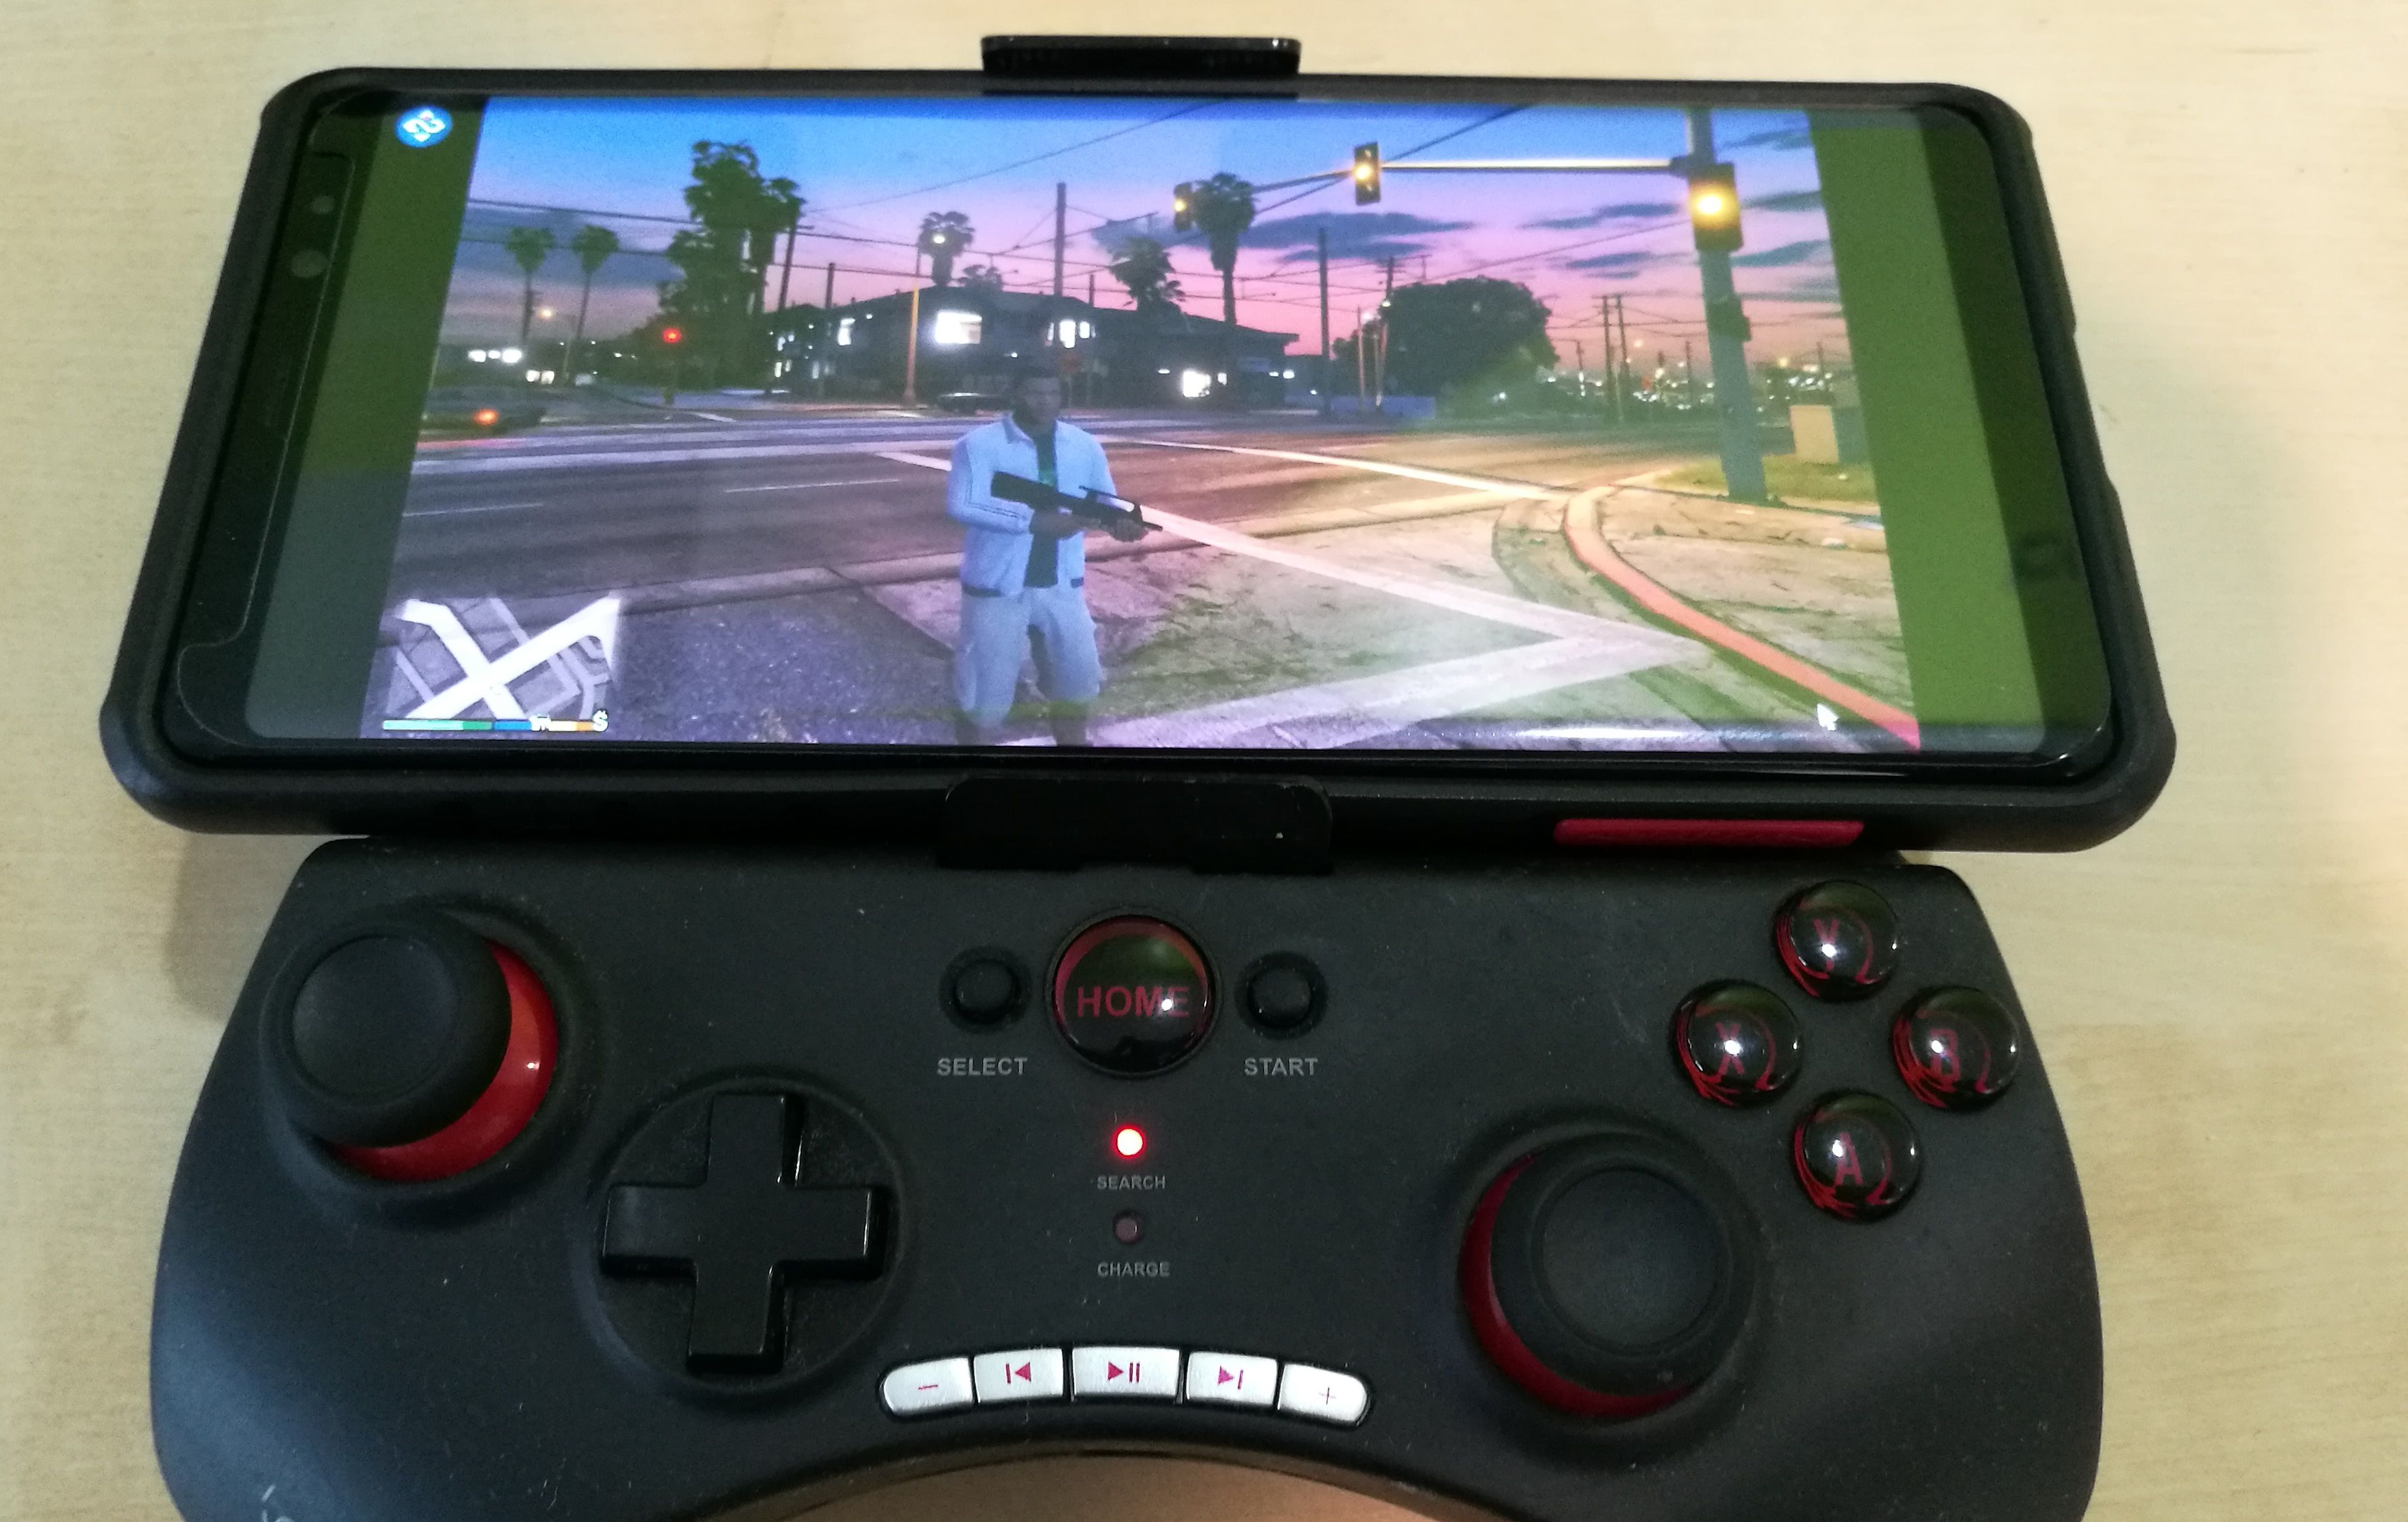 เล่นเกม PC บนมือถือหรือแทบเล็ต Android ผ่าน 4G / WiFi ง่ายๆ ด้วยแอป Remotr (โหลดฟรี)